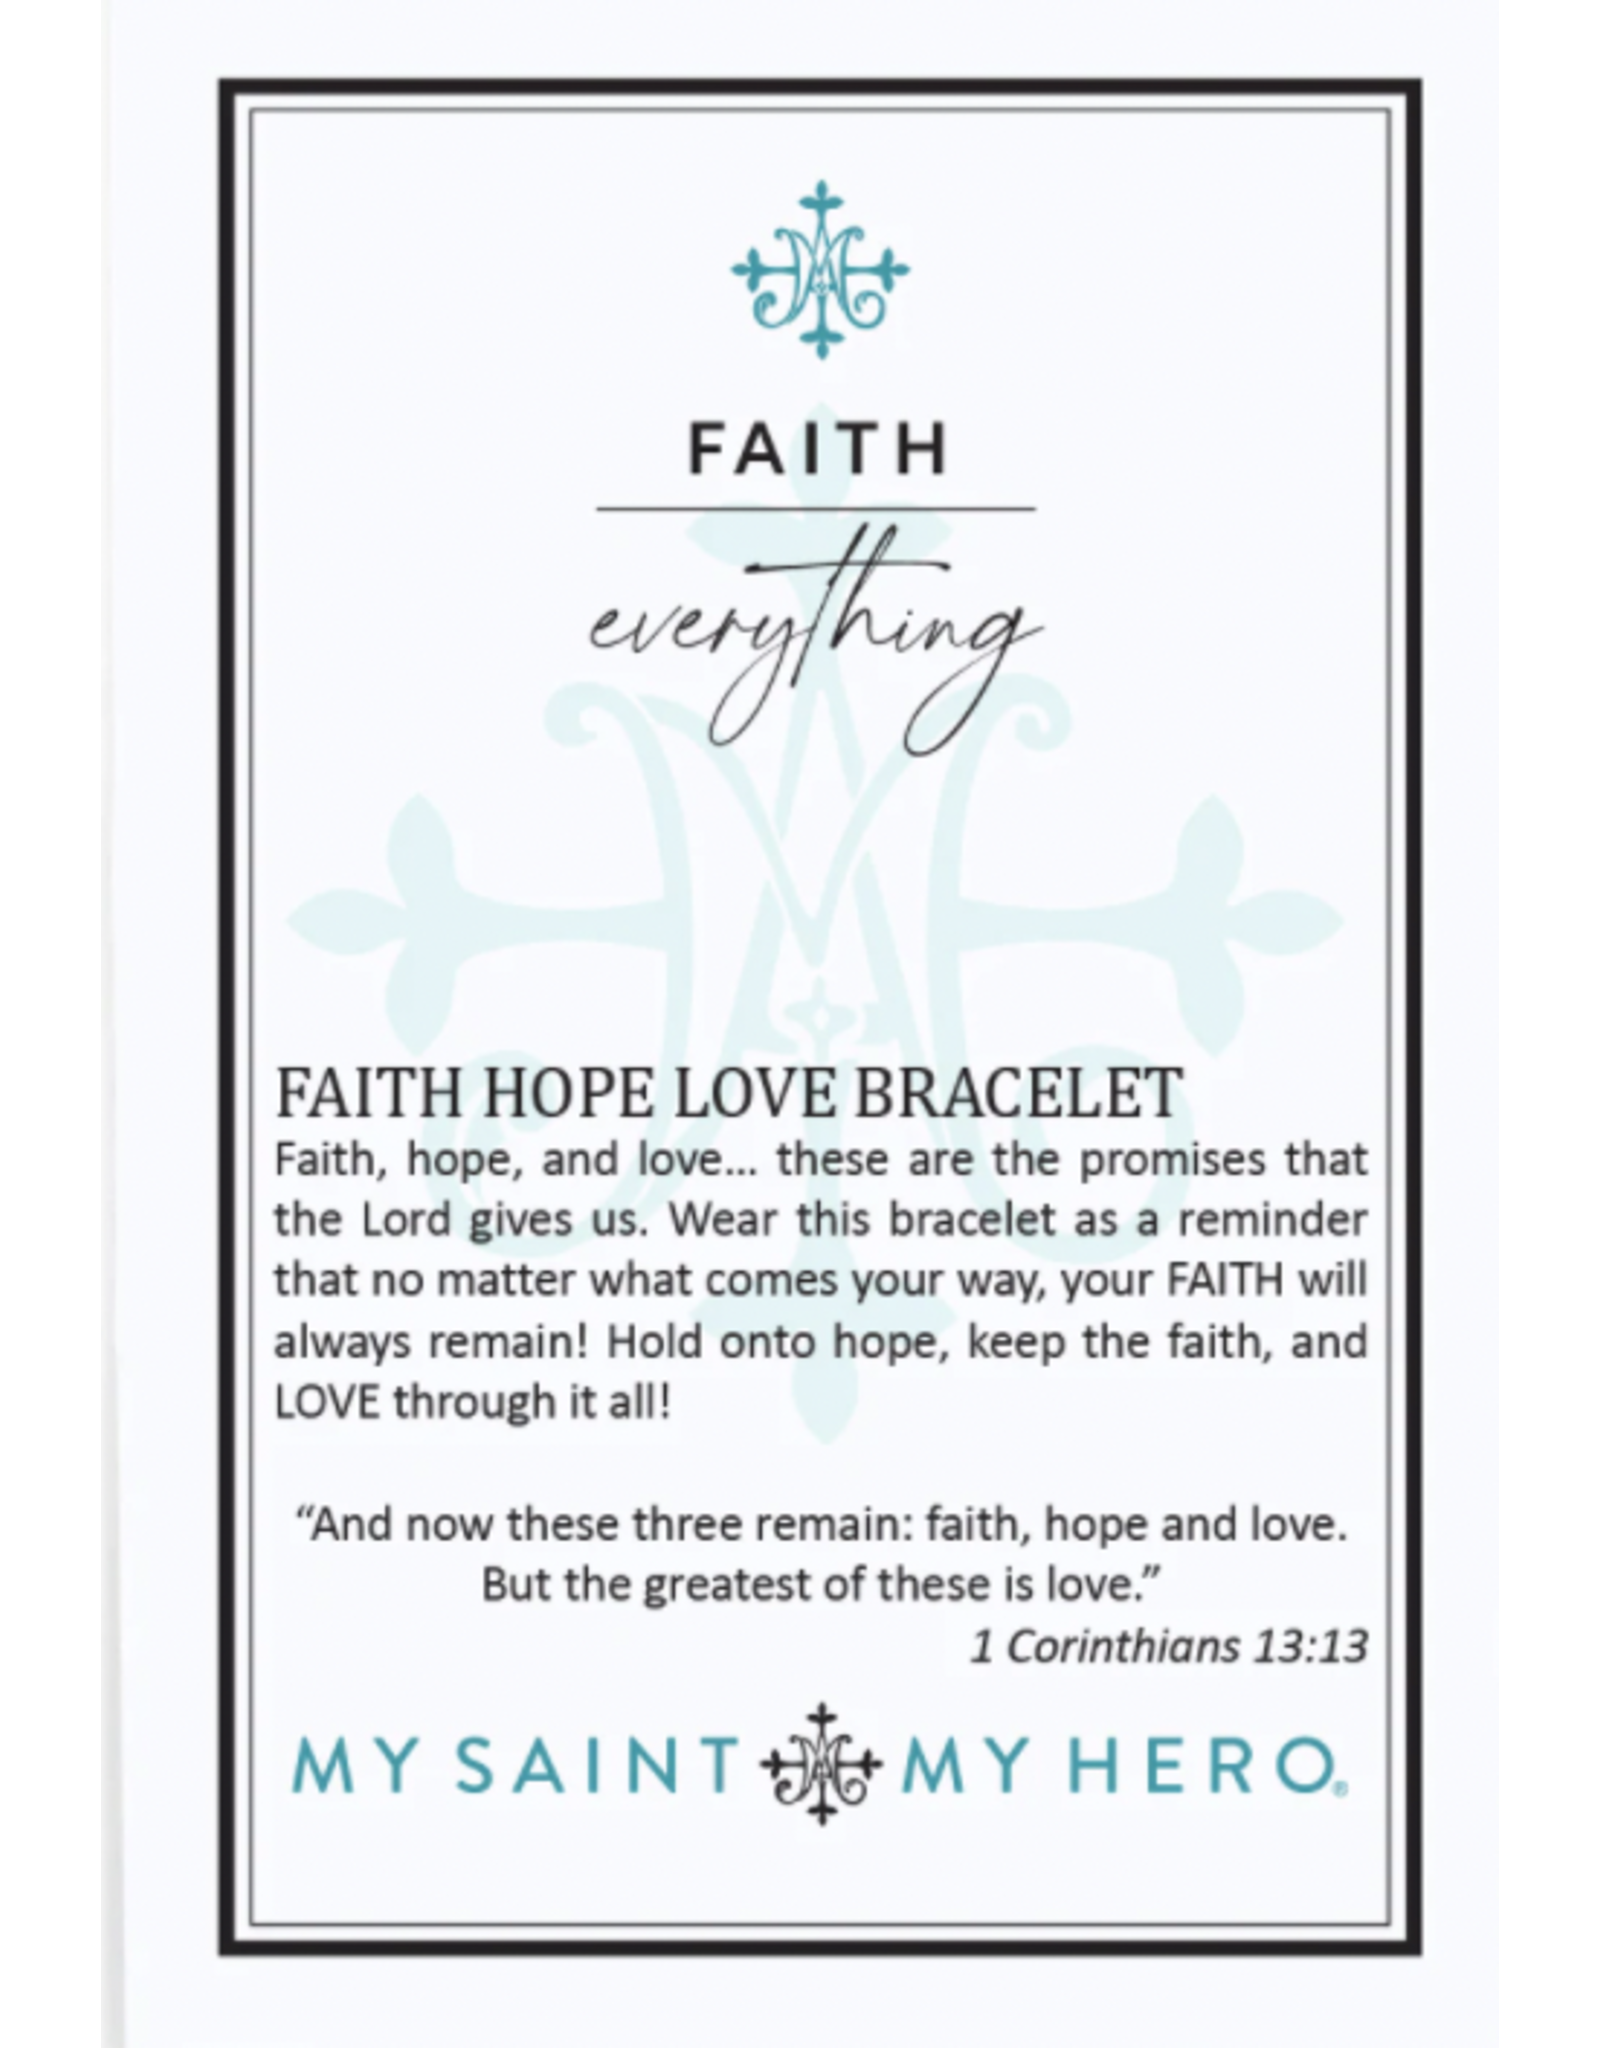 My Saint My Hero Bracelet - Faith over Everything